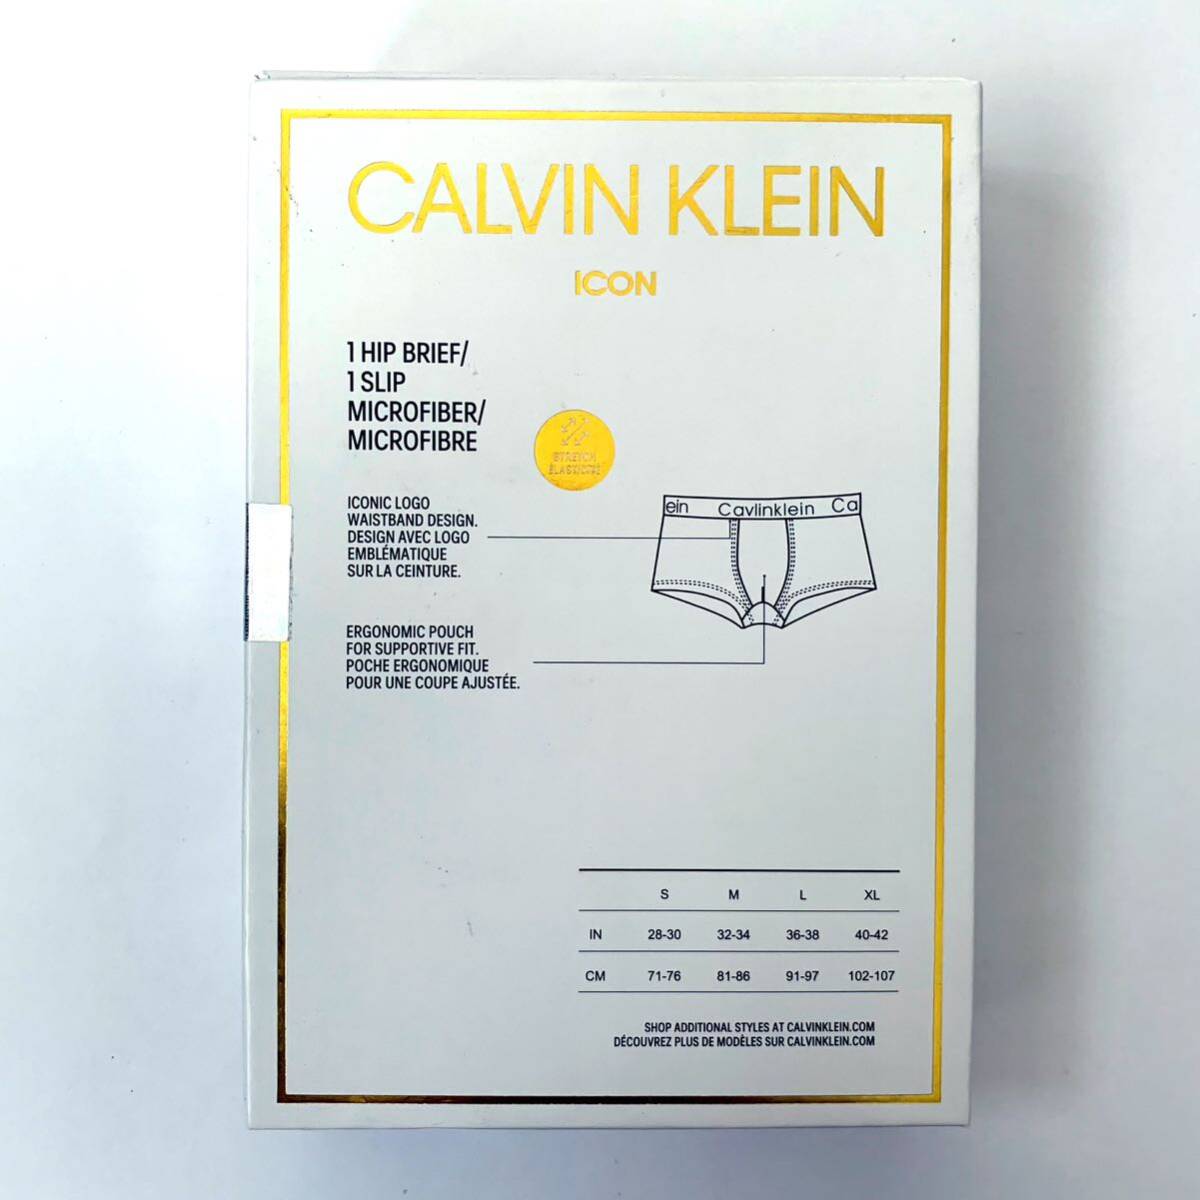 Calvin Klein ボクサーパンツ ICON Sサイズ 3枚セット ブラック ダークブルー ライトブルー 送料無料 最短発送 カルバンクライン